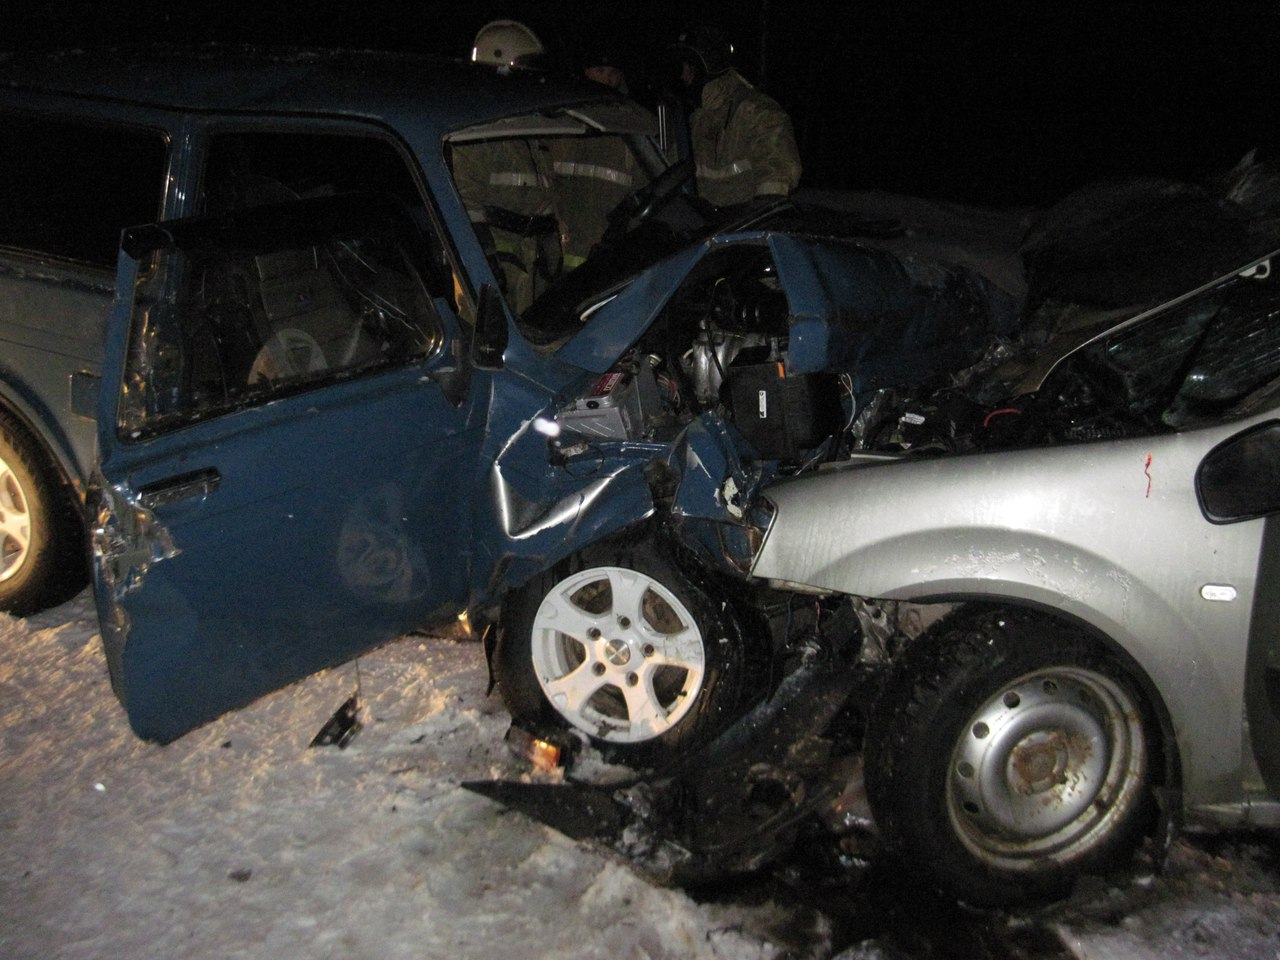 Появились фото смертельного ДТП в Коми, где по вине пожилого водителя погибли трое